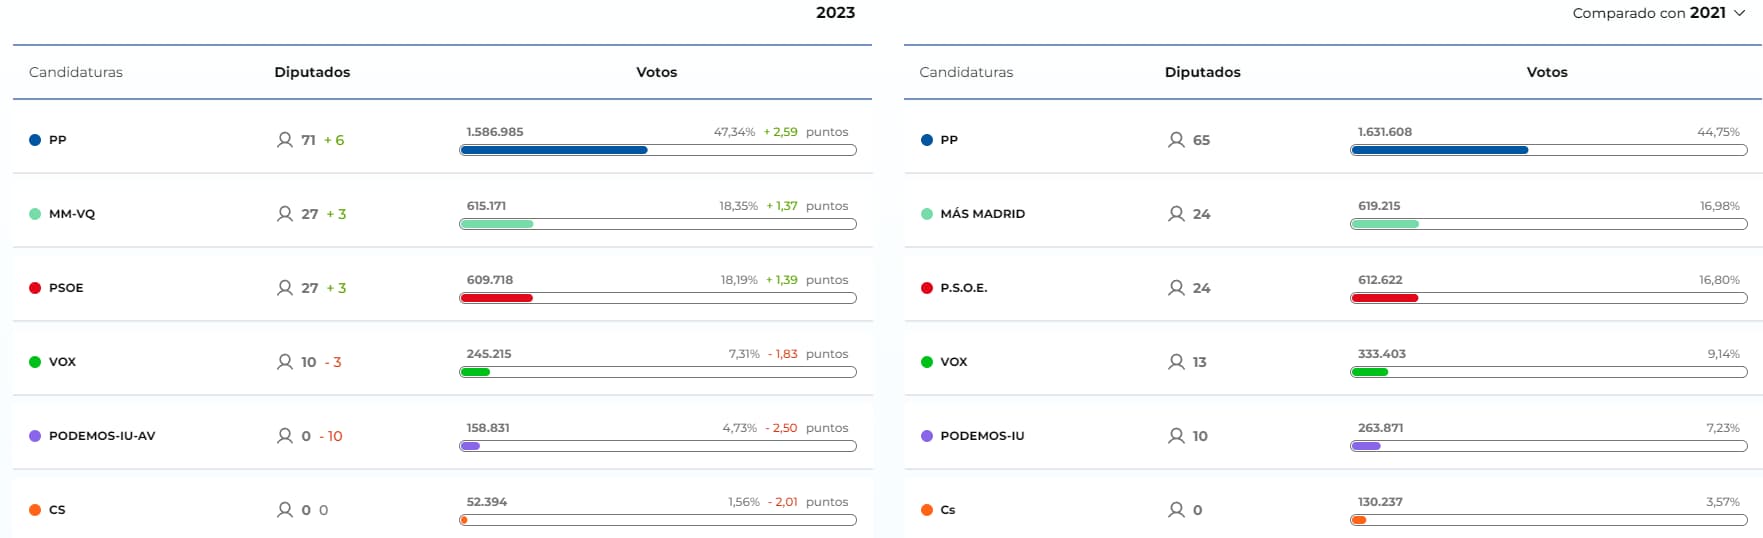 Resultados electorales 2023 (Fuente: CAM)